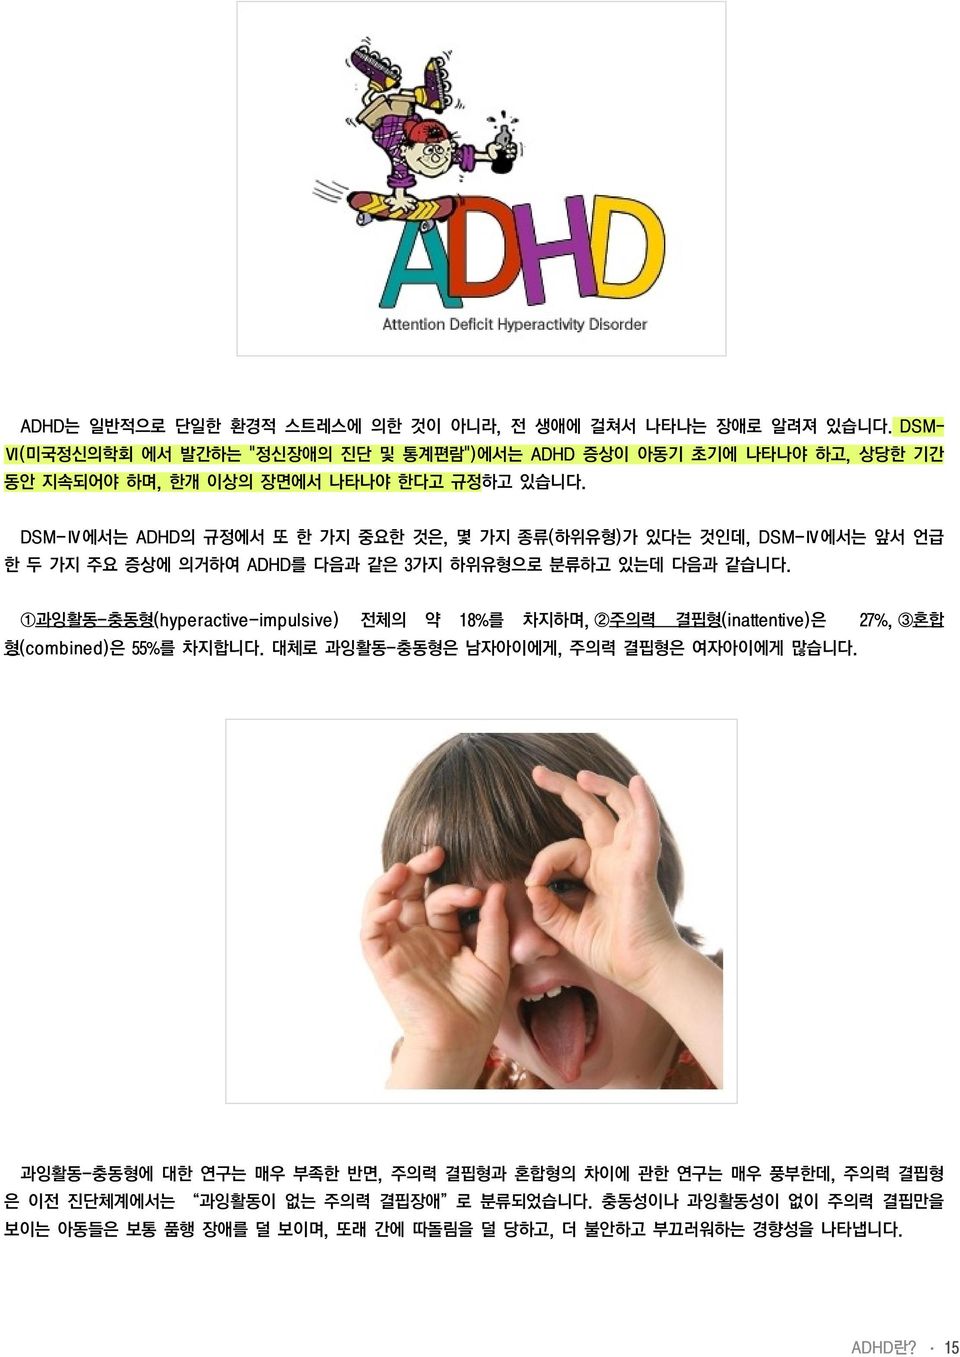 DSM-Ⅳ에서는 ADHD의 규정에서 또 한 가지 중요한 것은, 몇 가지 종류(하위유형)가 있다는 것인데, DSM-Ⅳ에서는 앞서 언급 한 두 가지 주요 증상에 의거하여 ADHD를 다음과 같은 3가지 하위유형으로 분류하고 있는데 다음과 같습니다.